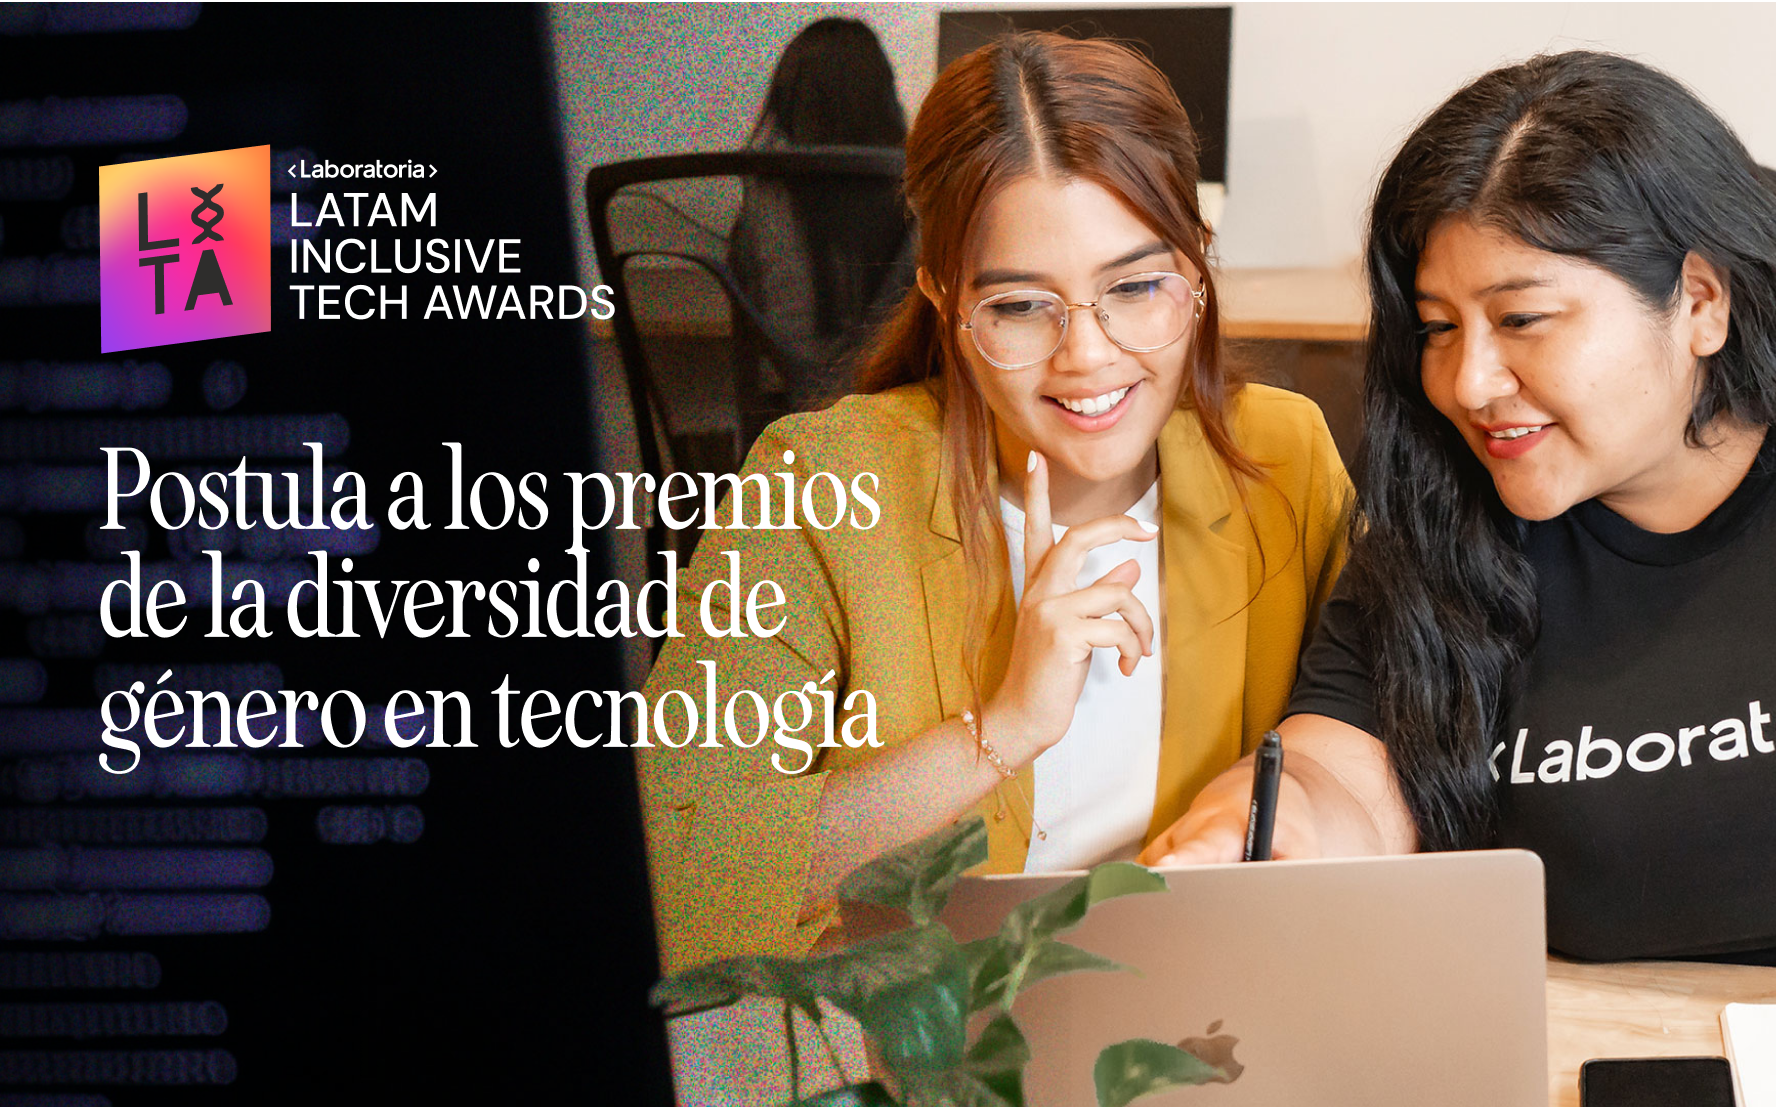 Latam Inclusive Tech Awards: ¿cómo postular tu iniciativa y contribuir a la equidad en tecnología?